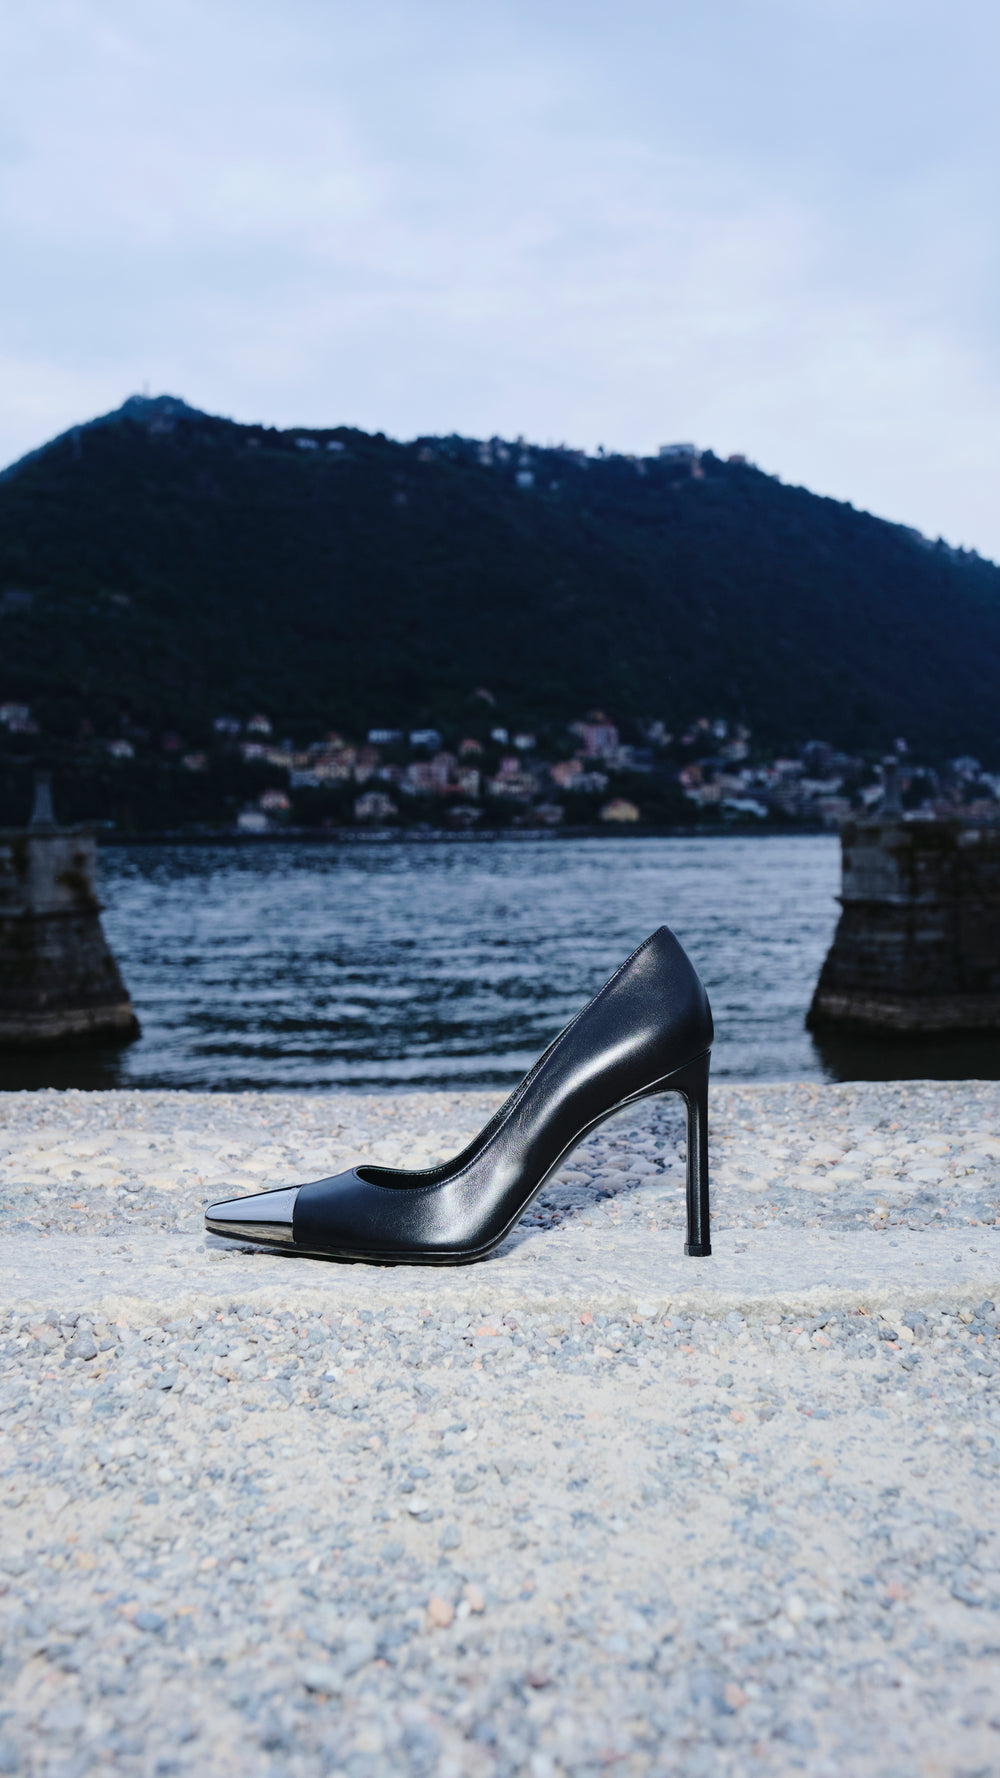 Louis Vuitton's Blocked Heel Sock Boots (Above Knee) - BlackMiss Luxury